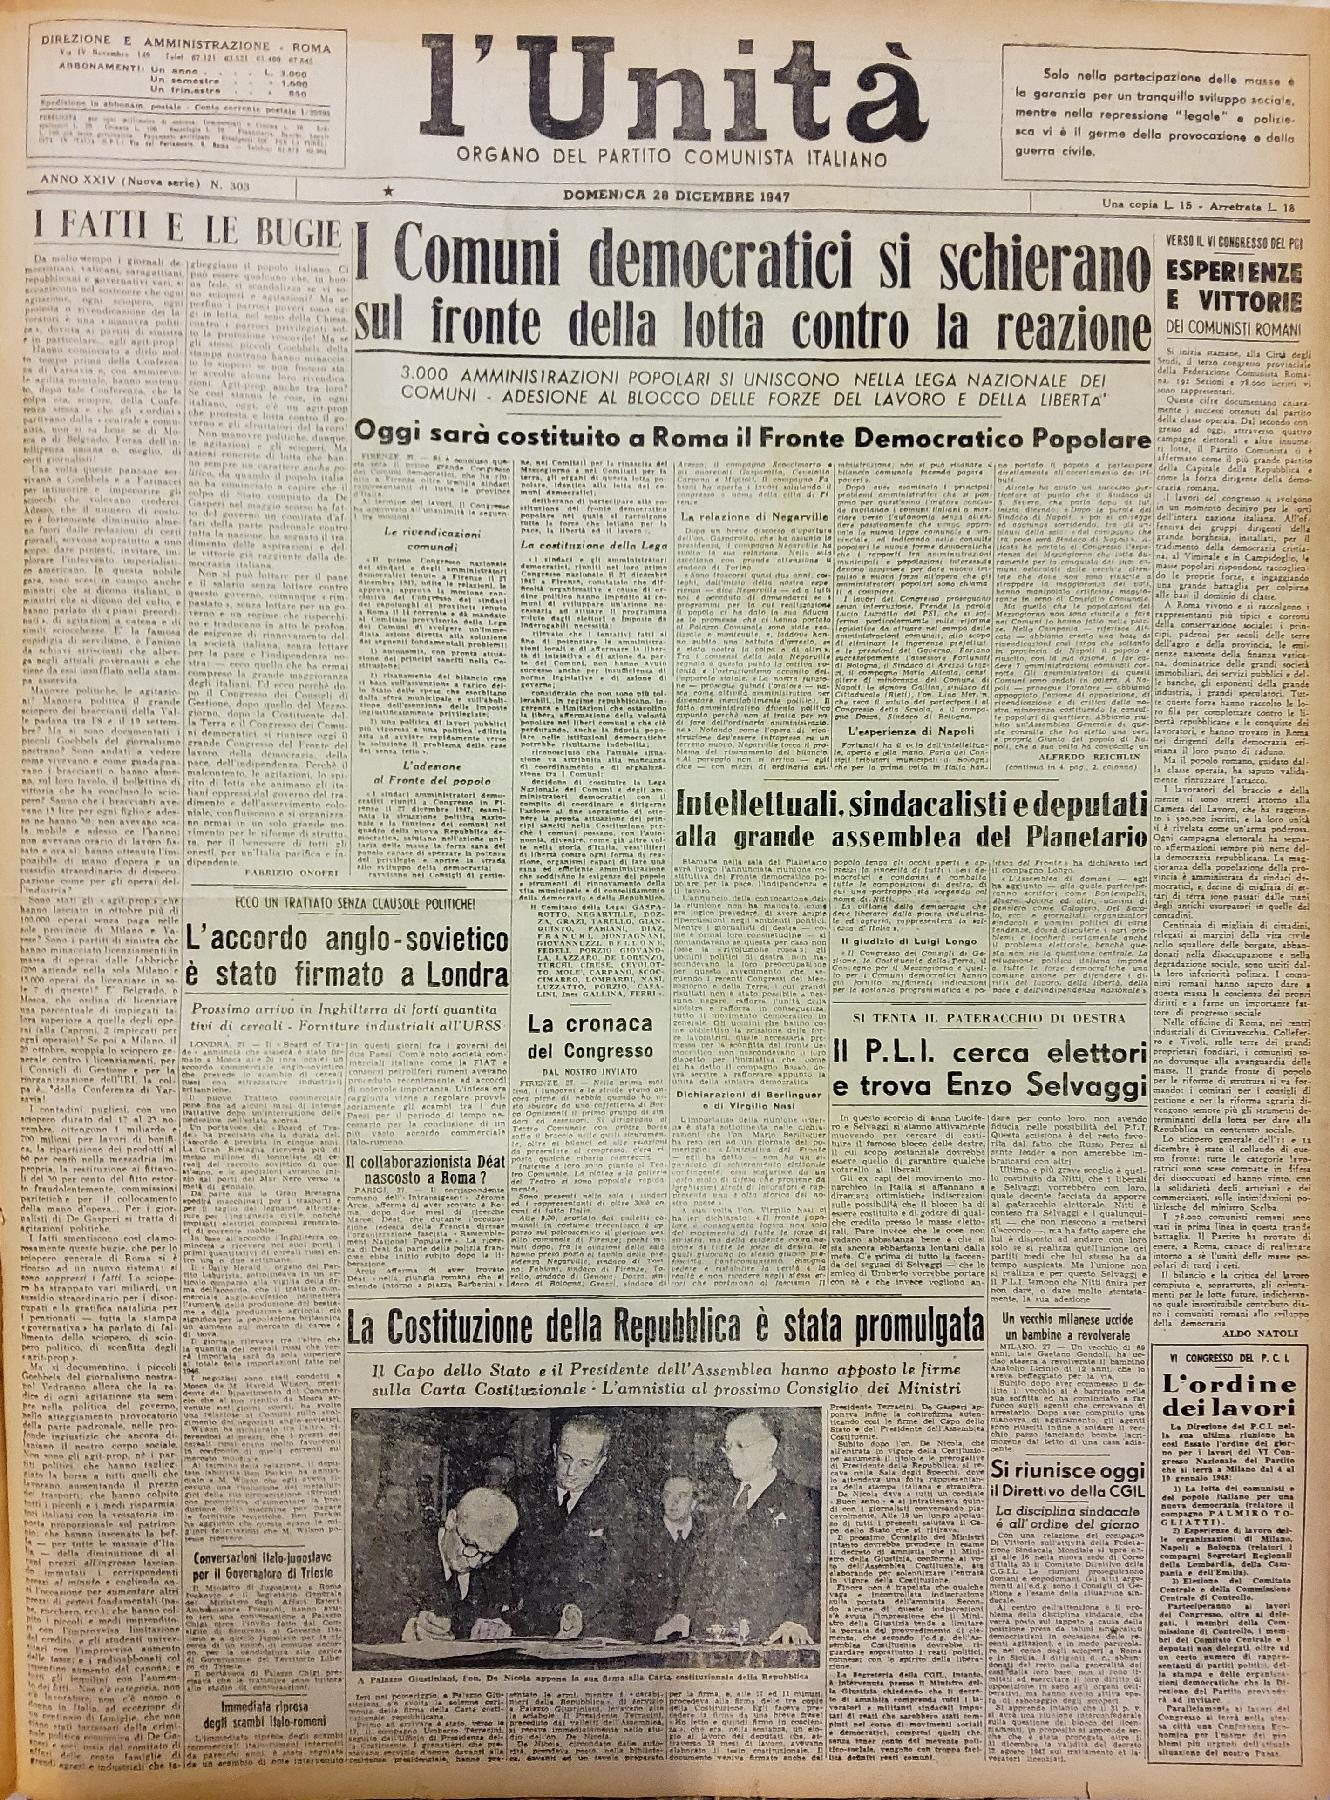 28 dicembre 1947 - Prima pagina del quotidiano "L'Unità"